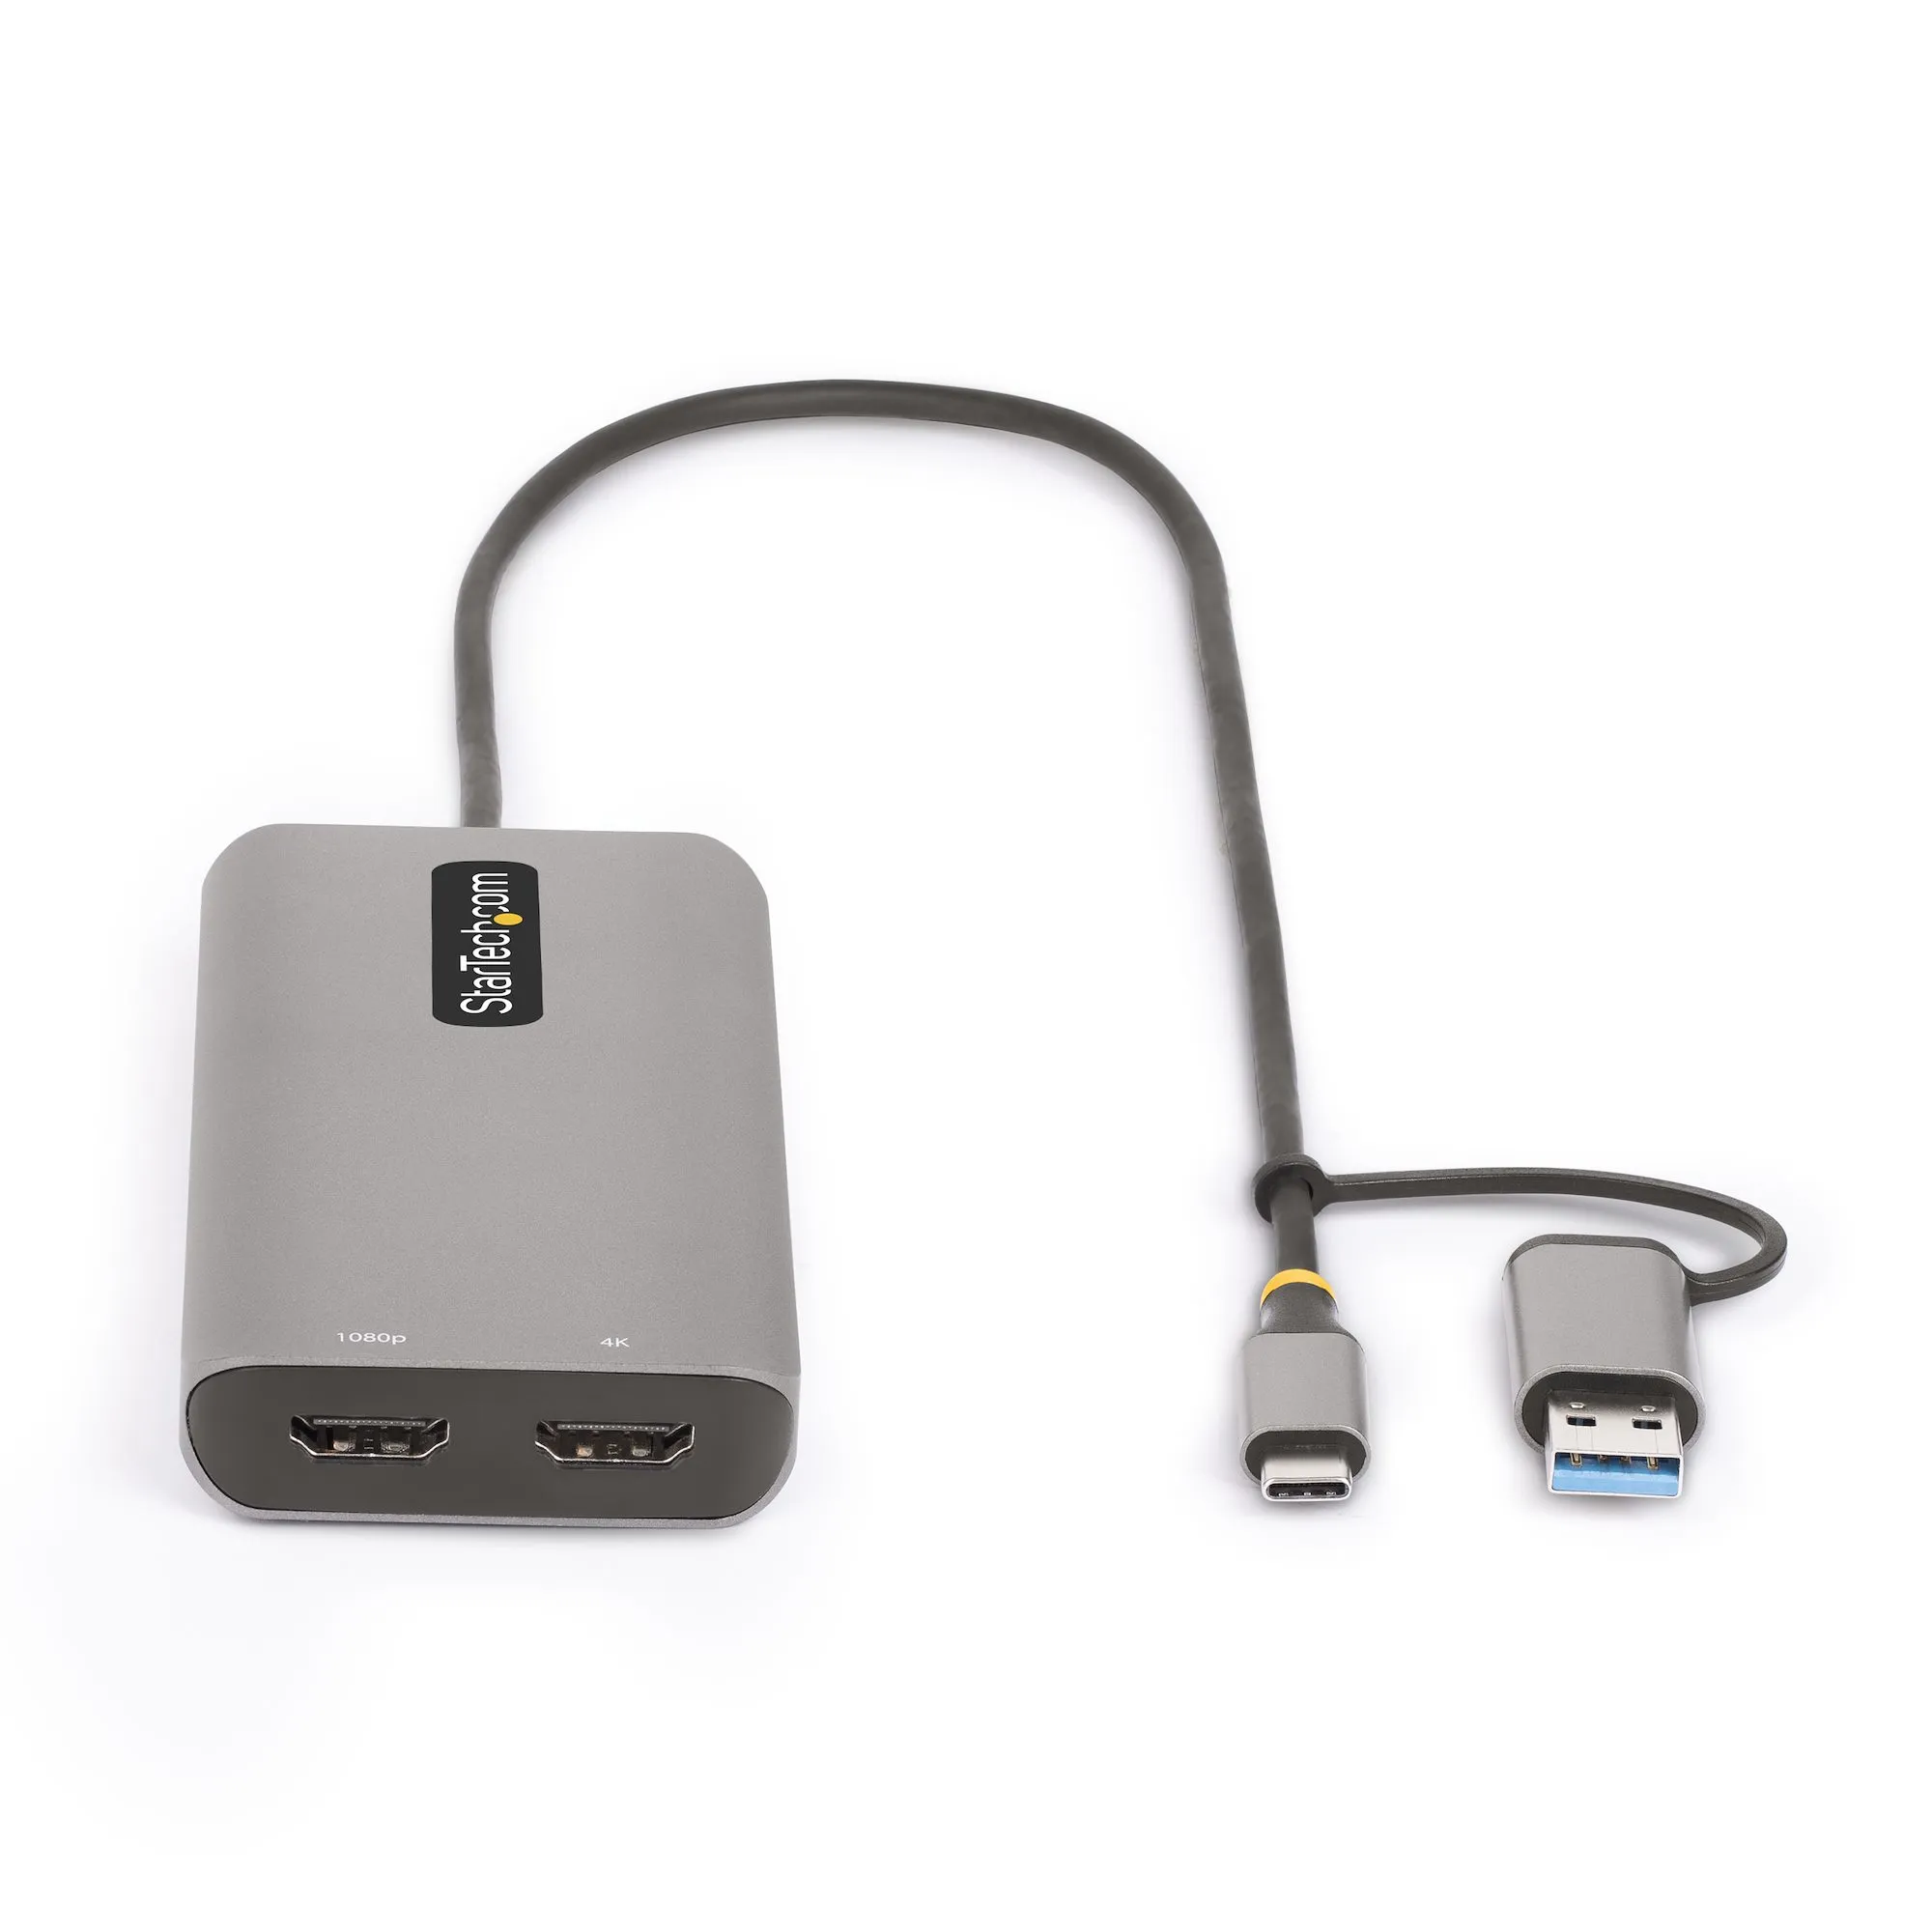 Achat StarTech.com Adaptateur Multiport USB-C avec Dongle USB sur hello RSE - visuel 3